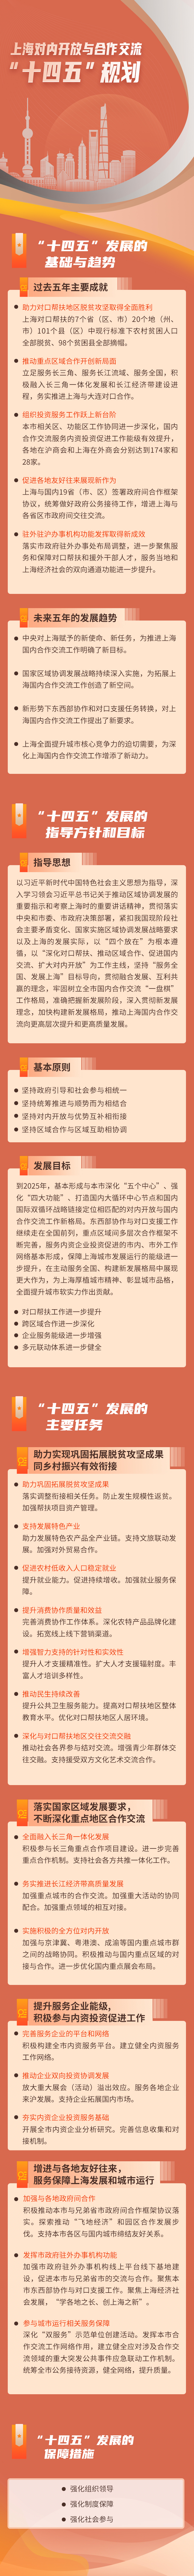 上海对内开放与合作交流“十四五”规划（解读材料）.jpg